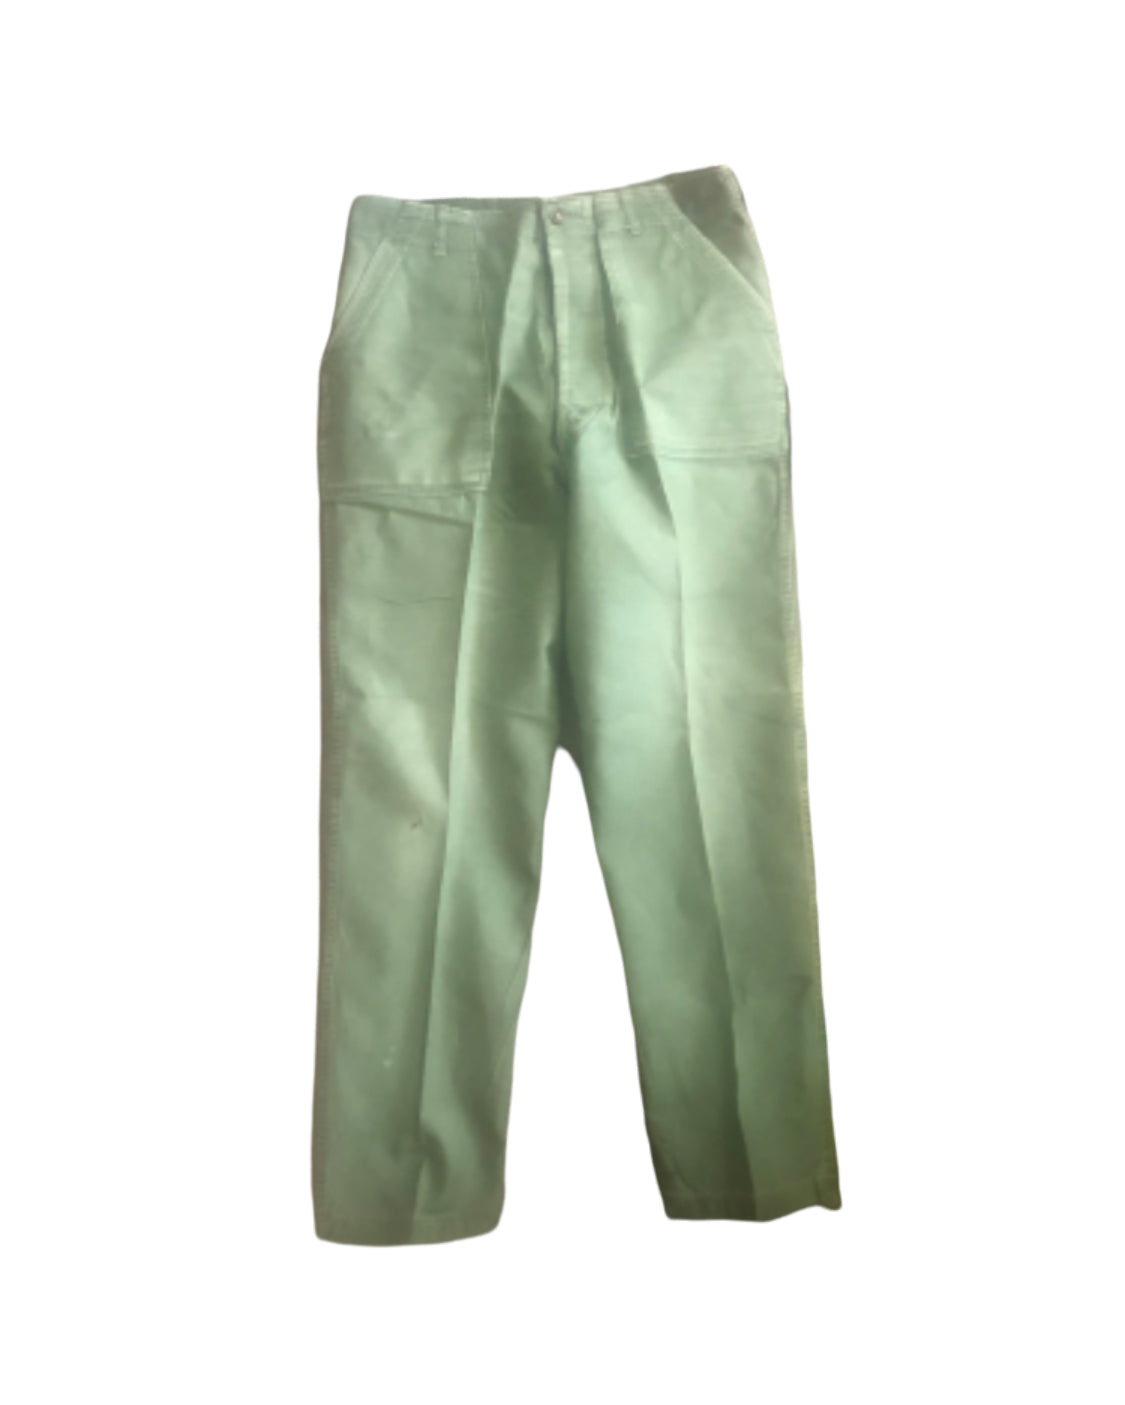 Vintage Military - Vietnam War Era 60's Men's Trousers Cotton